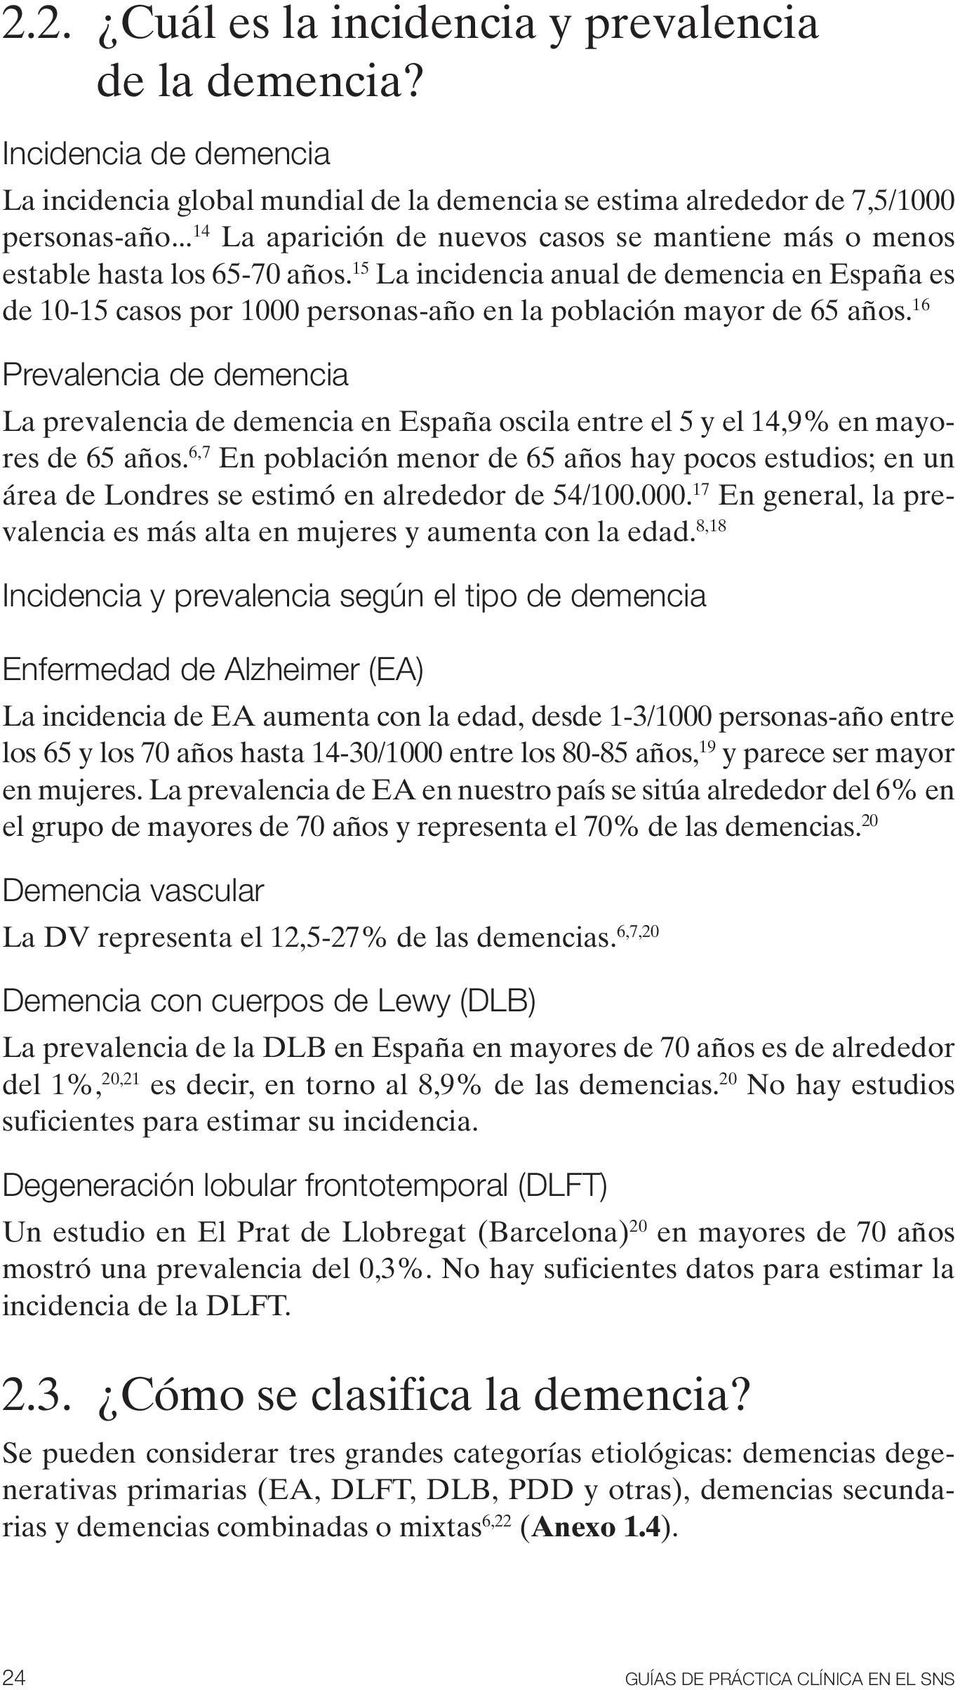 15 La incidencia anual de demencia en España es de 10-15 casos por 1000 personas-año en la población mayor de 65 años.